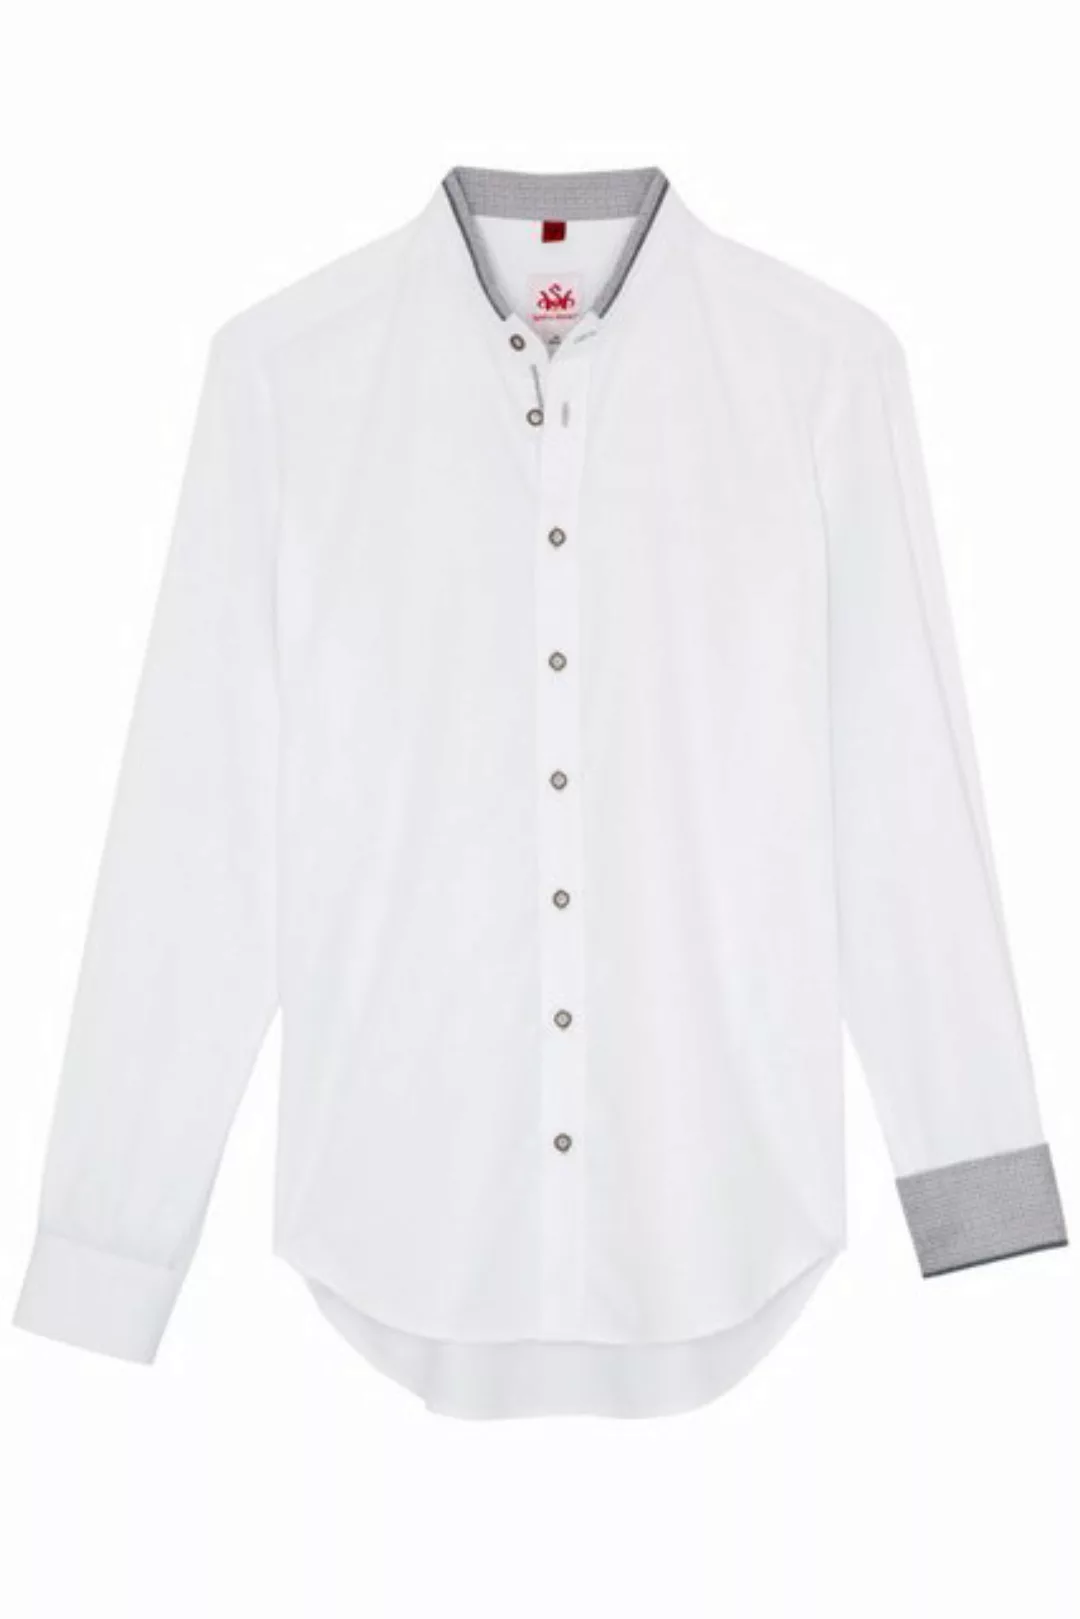 Spieth & Wensky Trachtenhemd Trachtenhemd - DUSTIN - weiß/grau, weiß/oliv günstig online kaufen